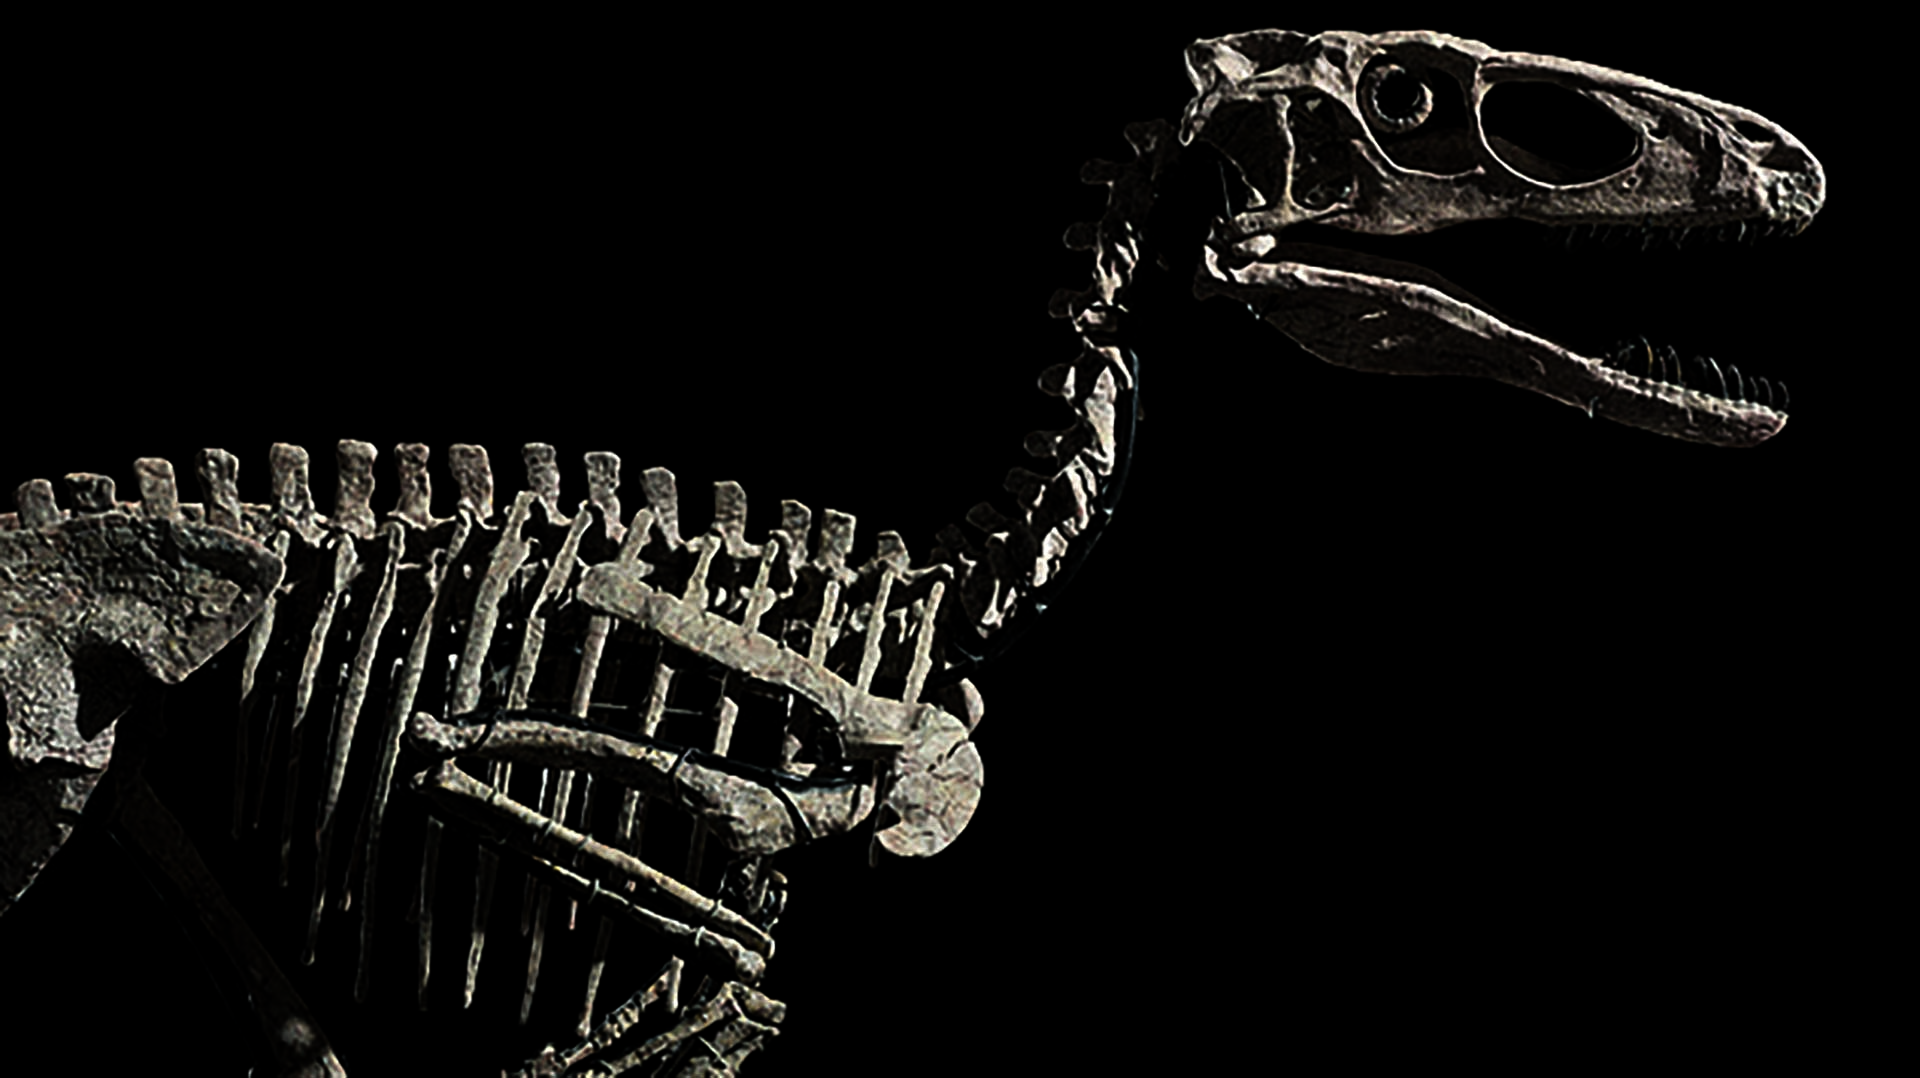 El Deinonychus, que significa "garra terrible", fue desenterrado en Wolf Canyon, Montana, EE. UU. entre 2012 y 2014, donde había permanecido casi perfectamente conservado durante unos 110 millones de años desde principios del período Cretácico.
(Foto: Daily Mail)
